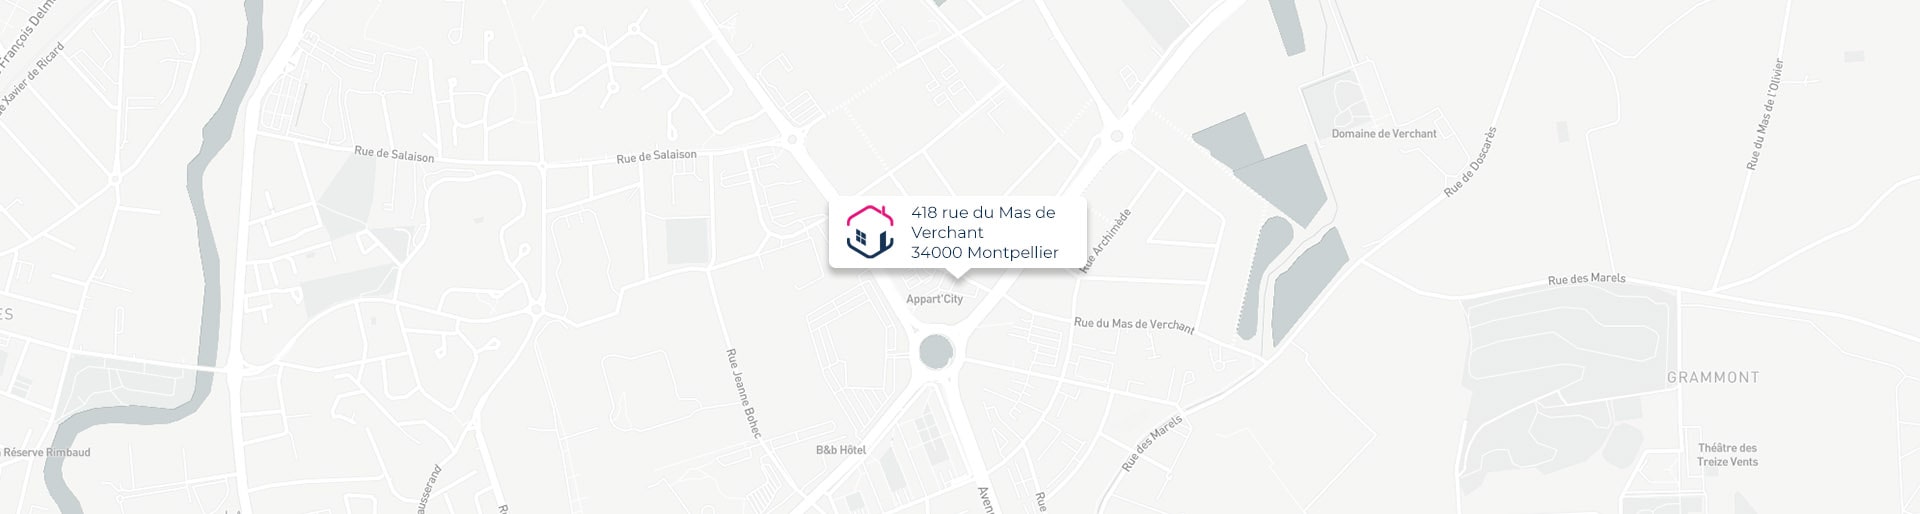 Plan de l'agence de Montpellier IMMO9 située 418, rue du Mas de Verchant 34000 Montpellier tel: tel:0411937334